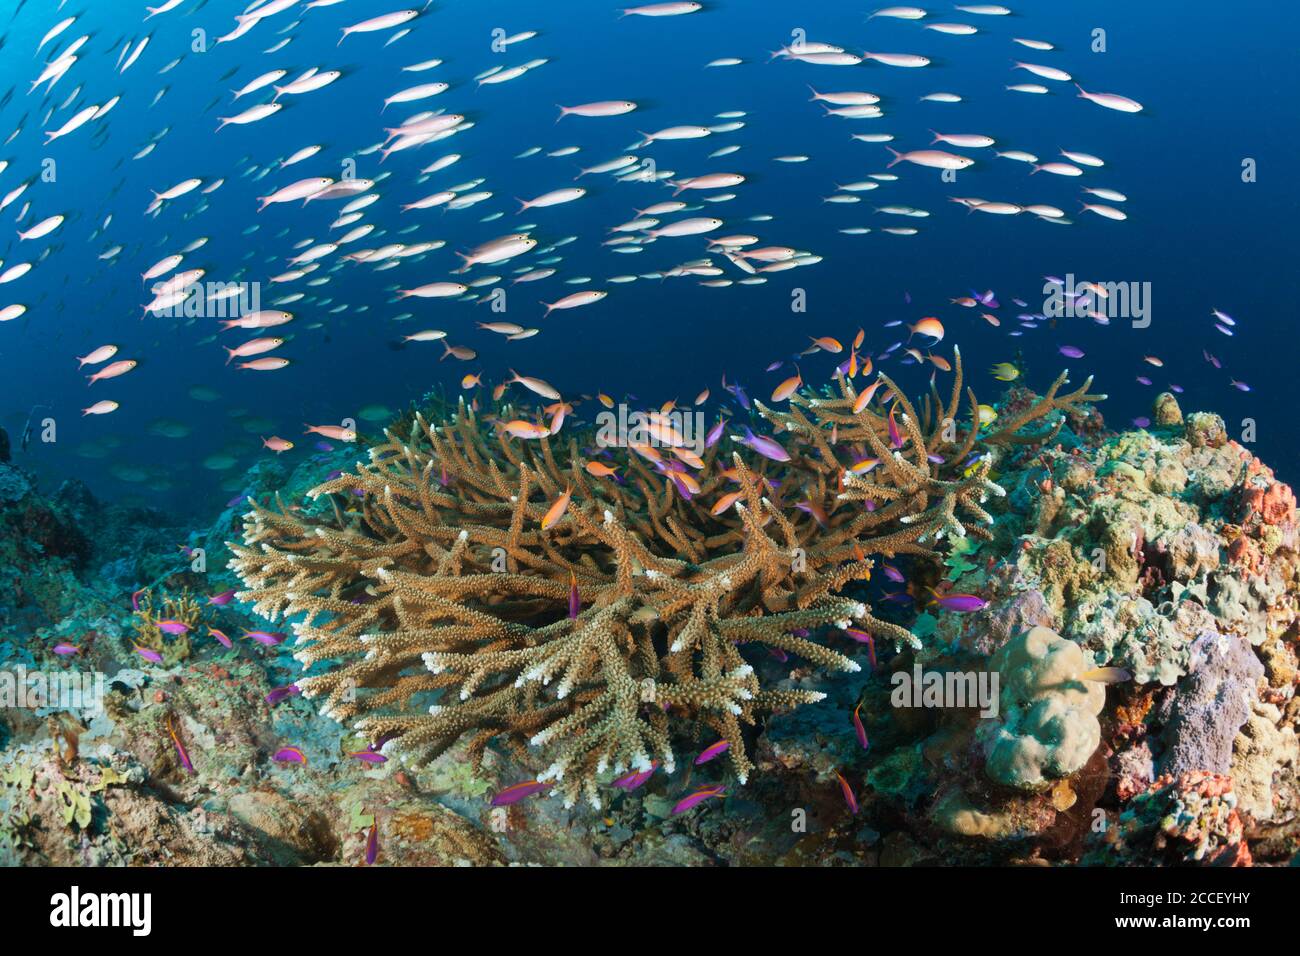 Anthias over Coral Reef, Anthias sp., New Ireland, Papua New Guinea Stock Photo